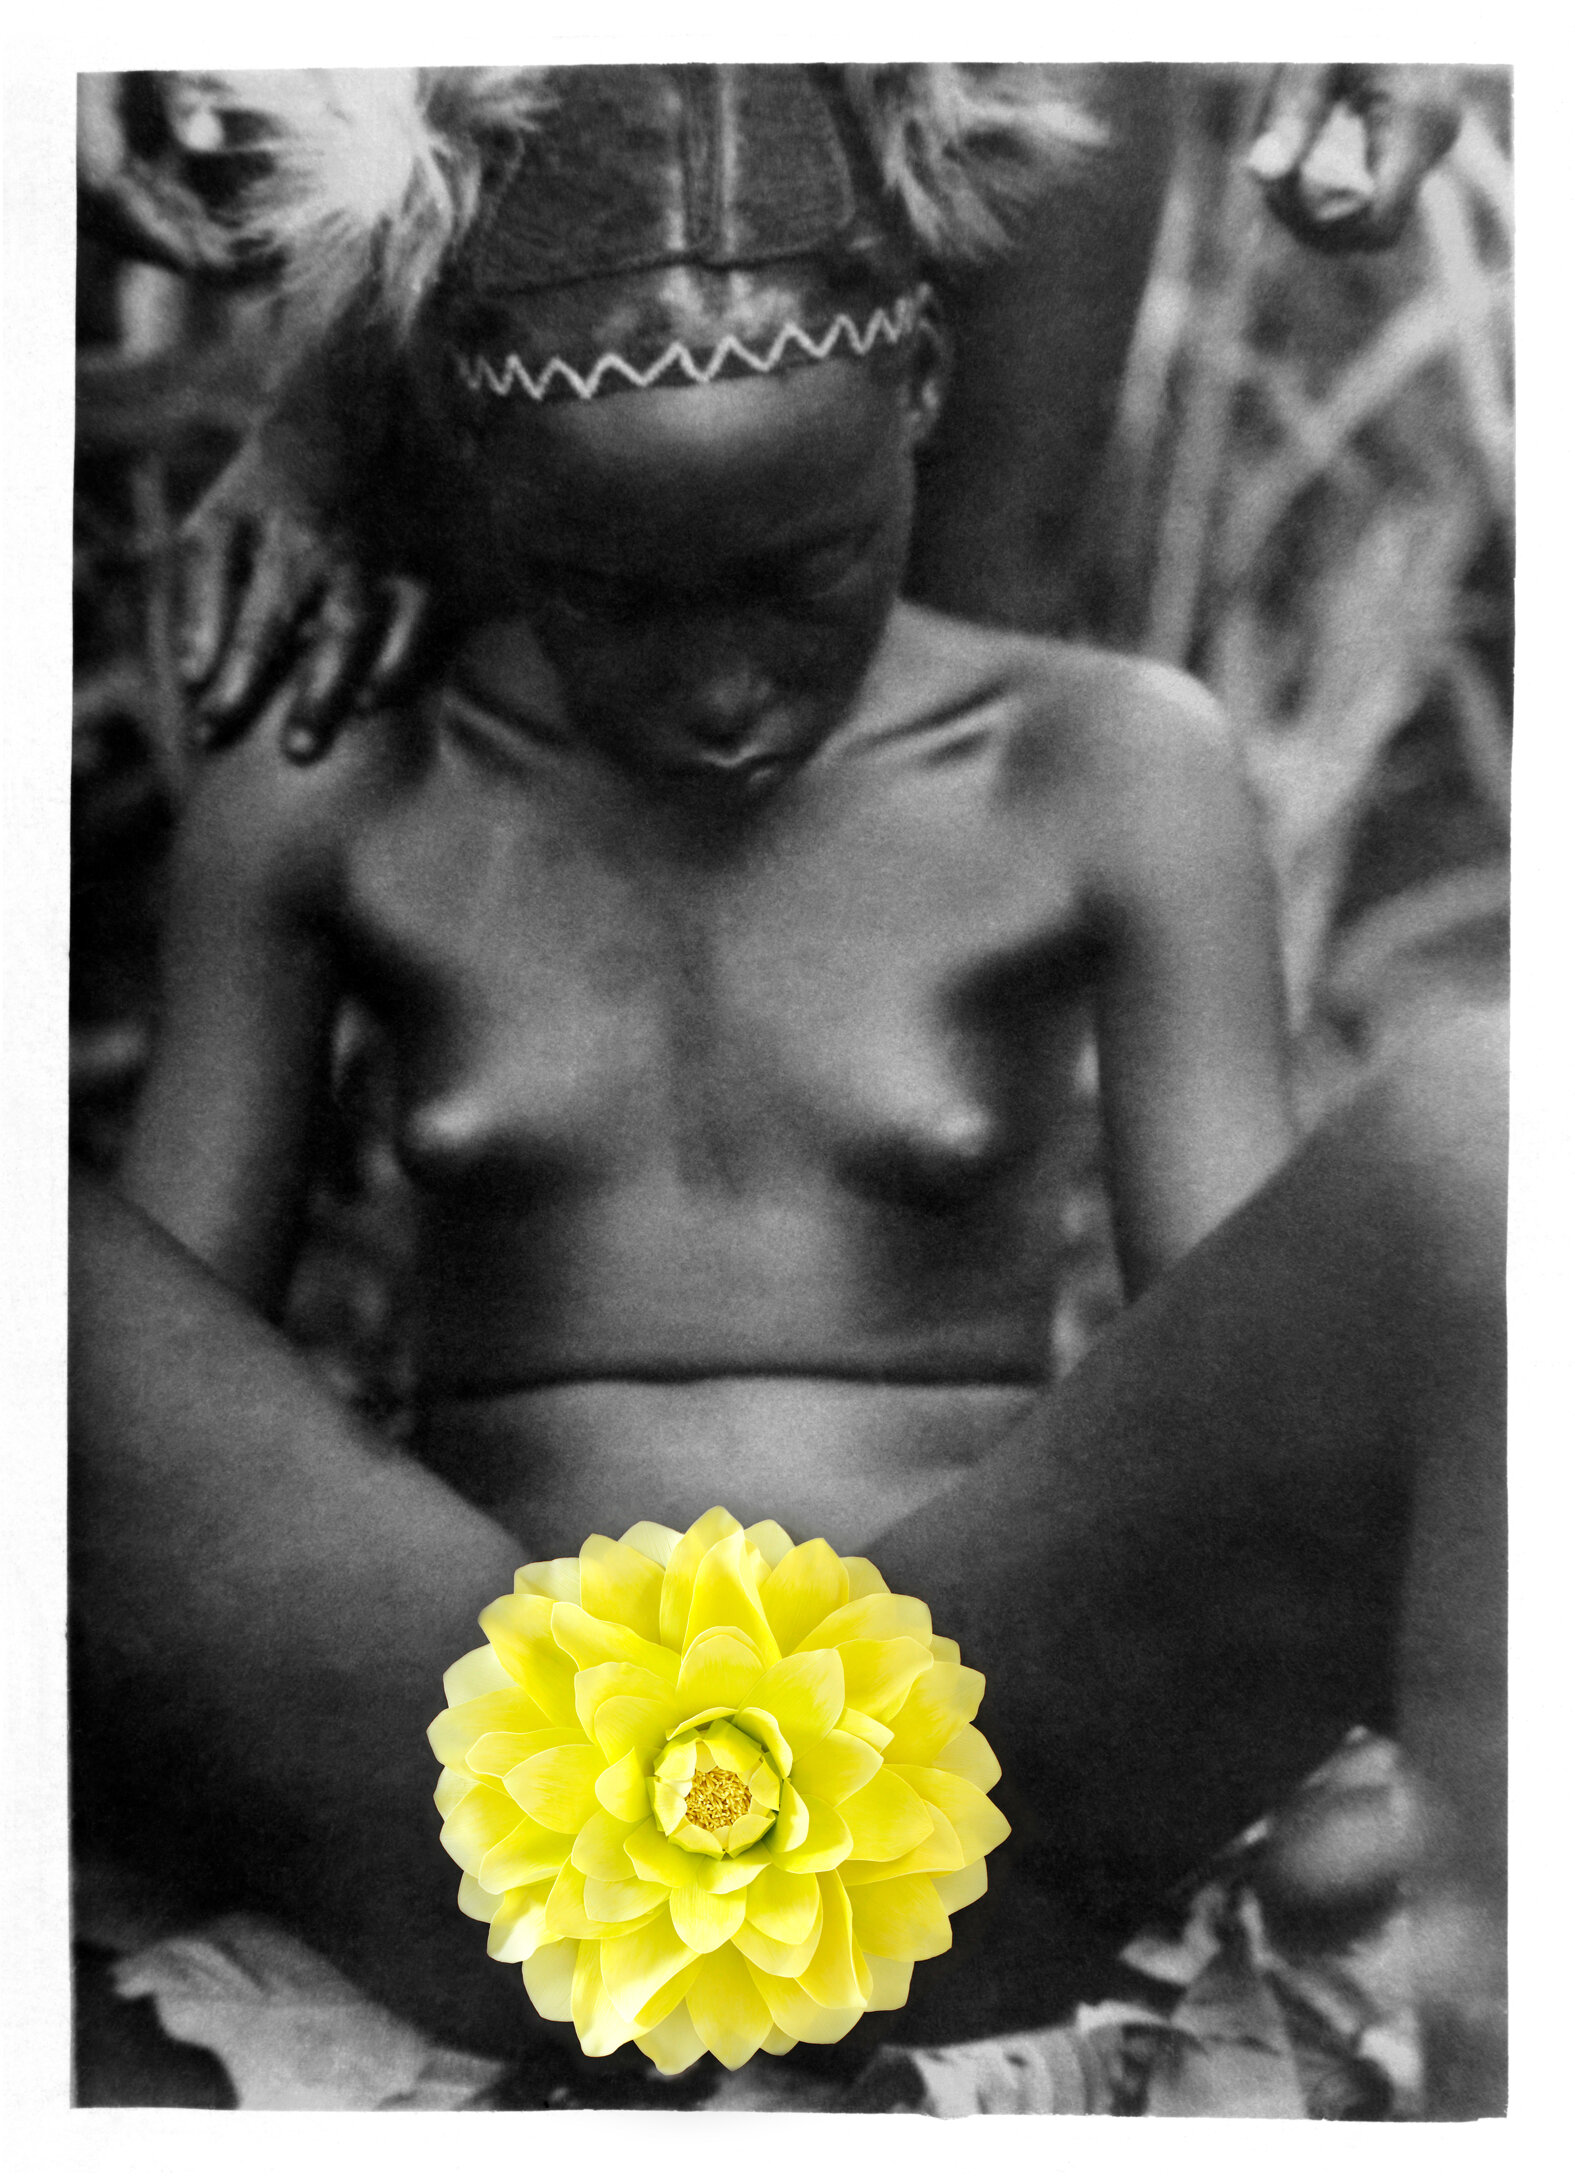 Owanto_La Jeune Fille a la Fleur_Flowers II.jpg